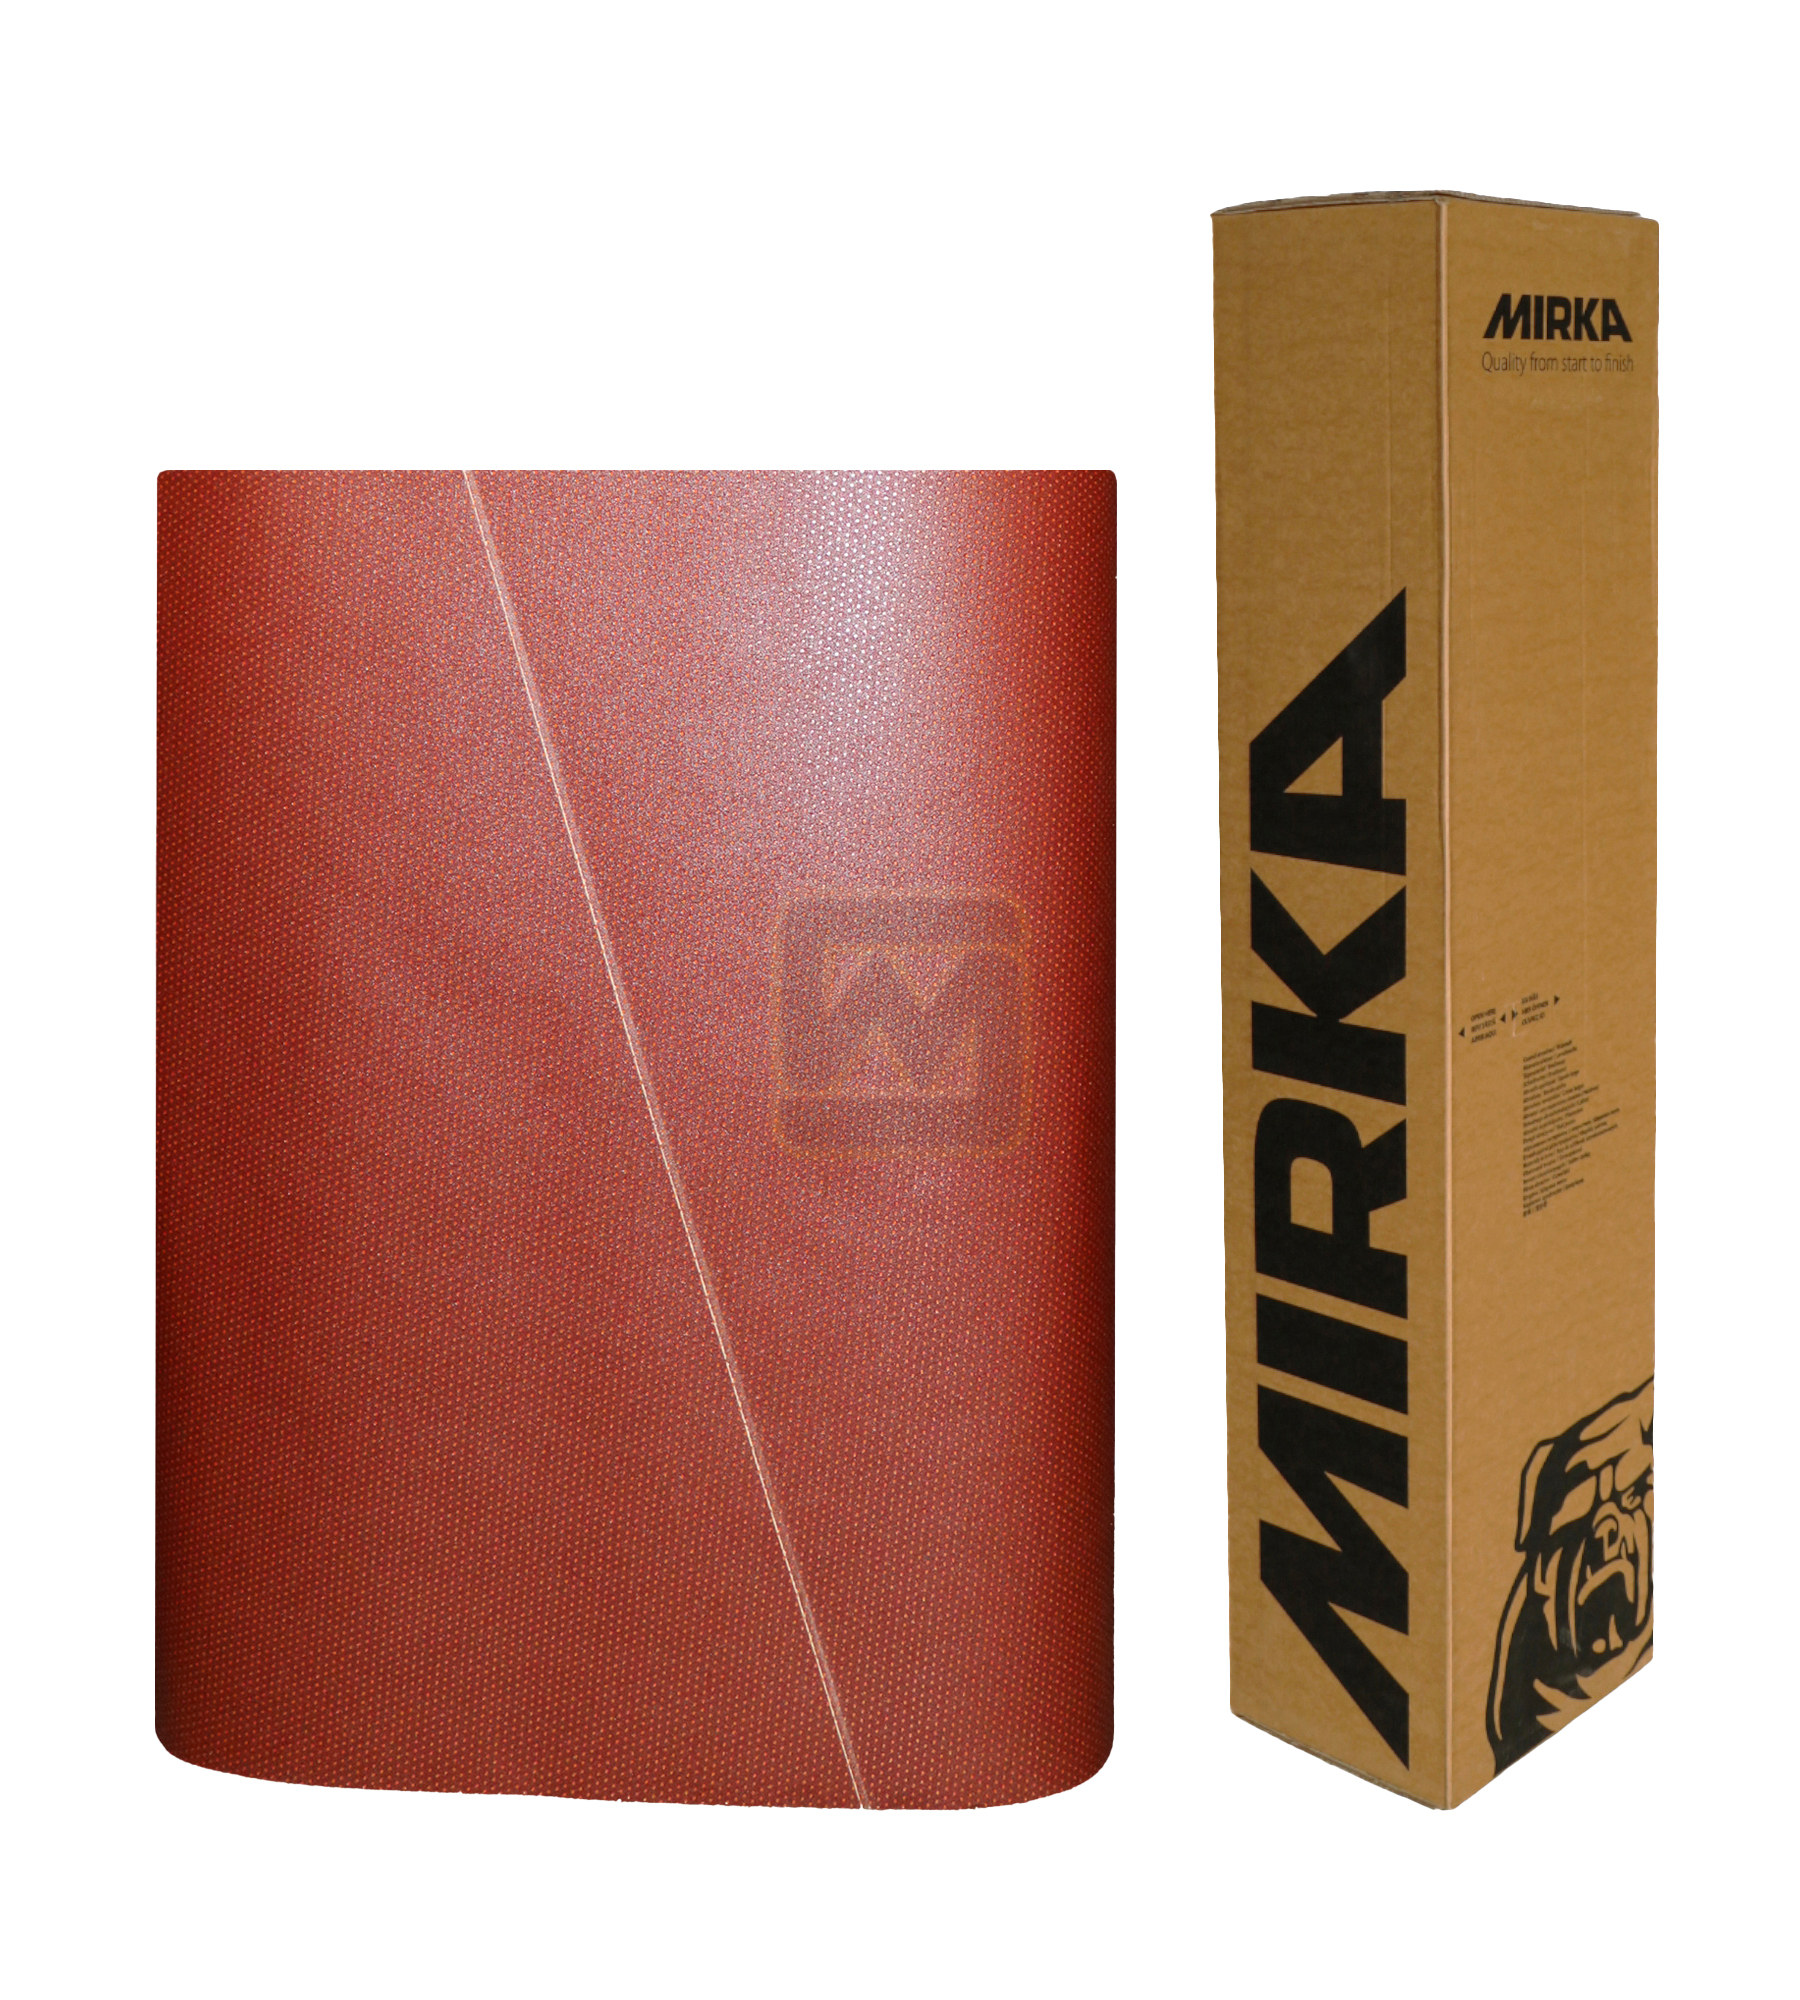 Abbildung Mirka Ultimax 1120x1900mm Breitband mit Verpackung.